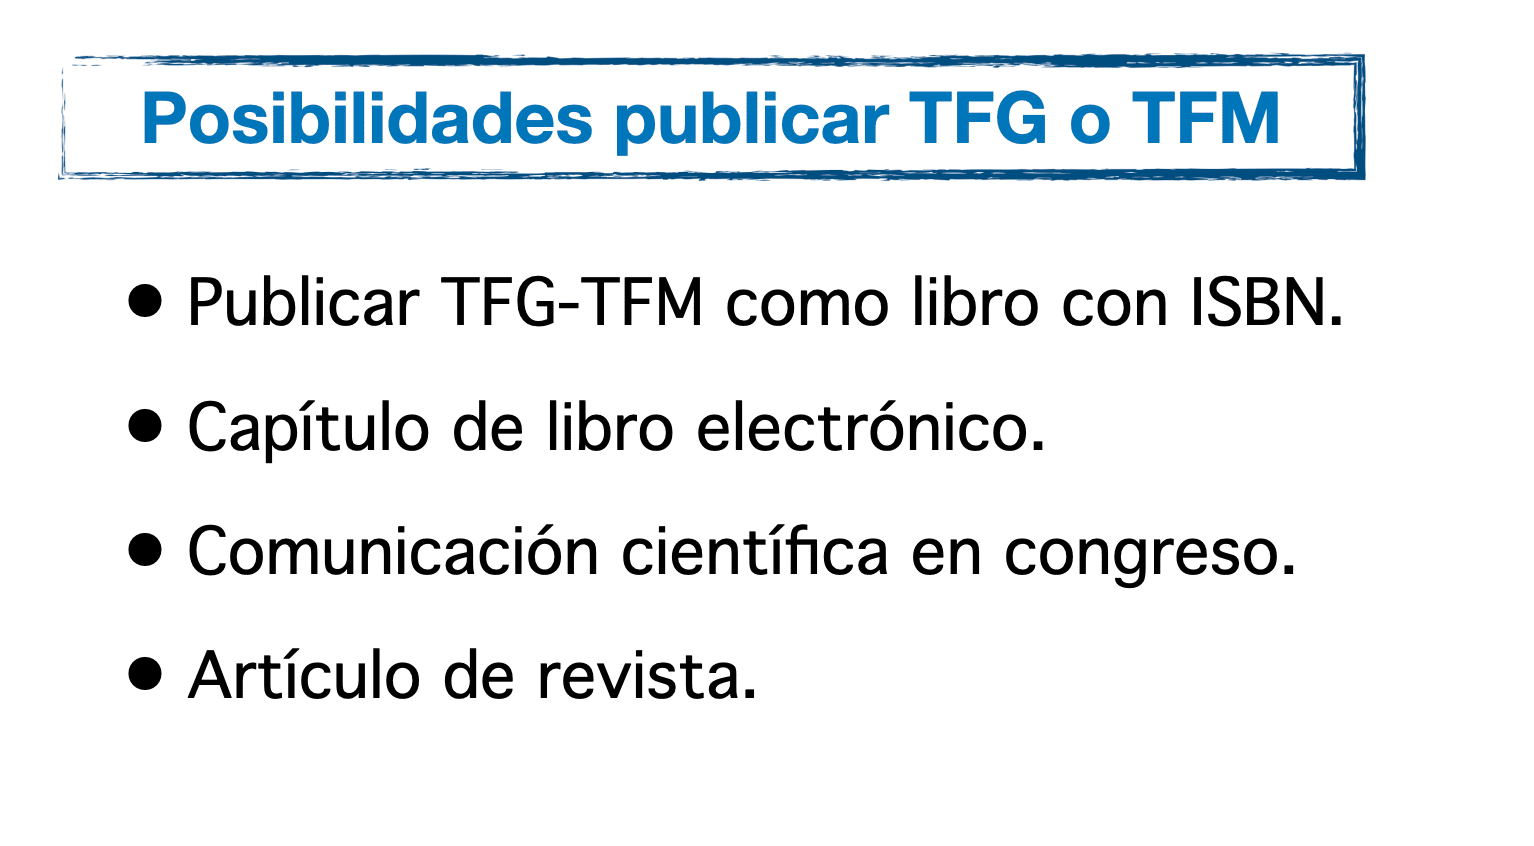 Publicar TFG-TFM